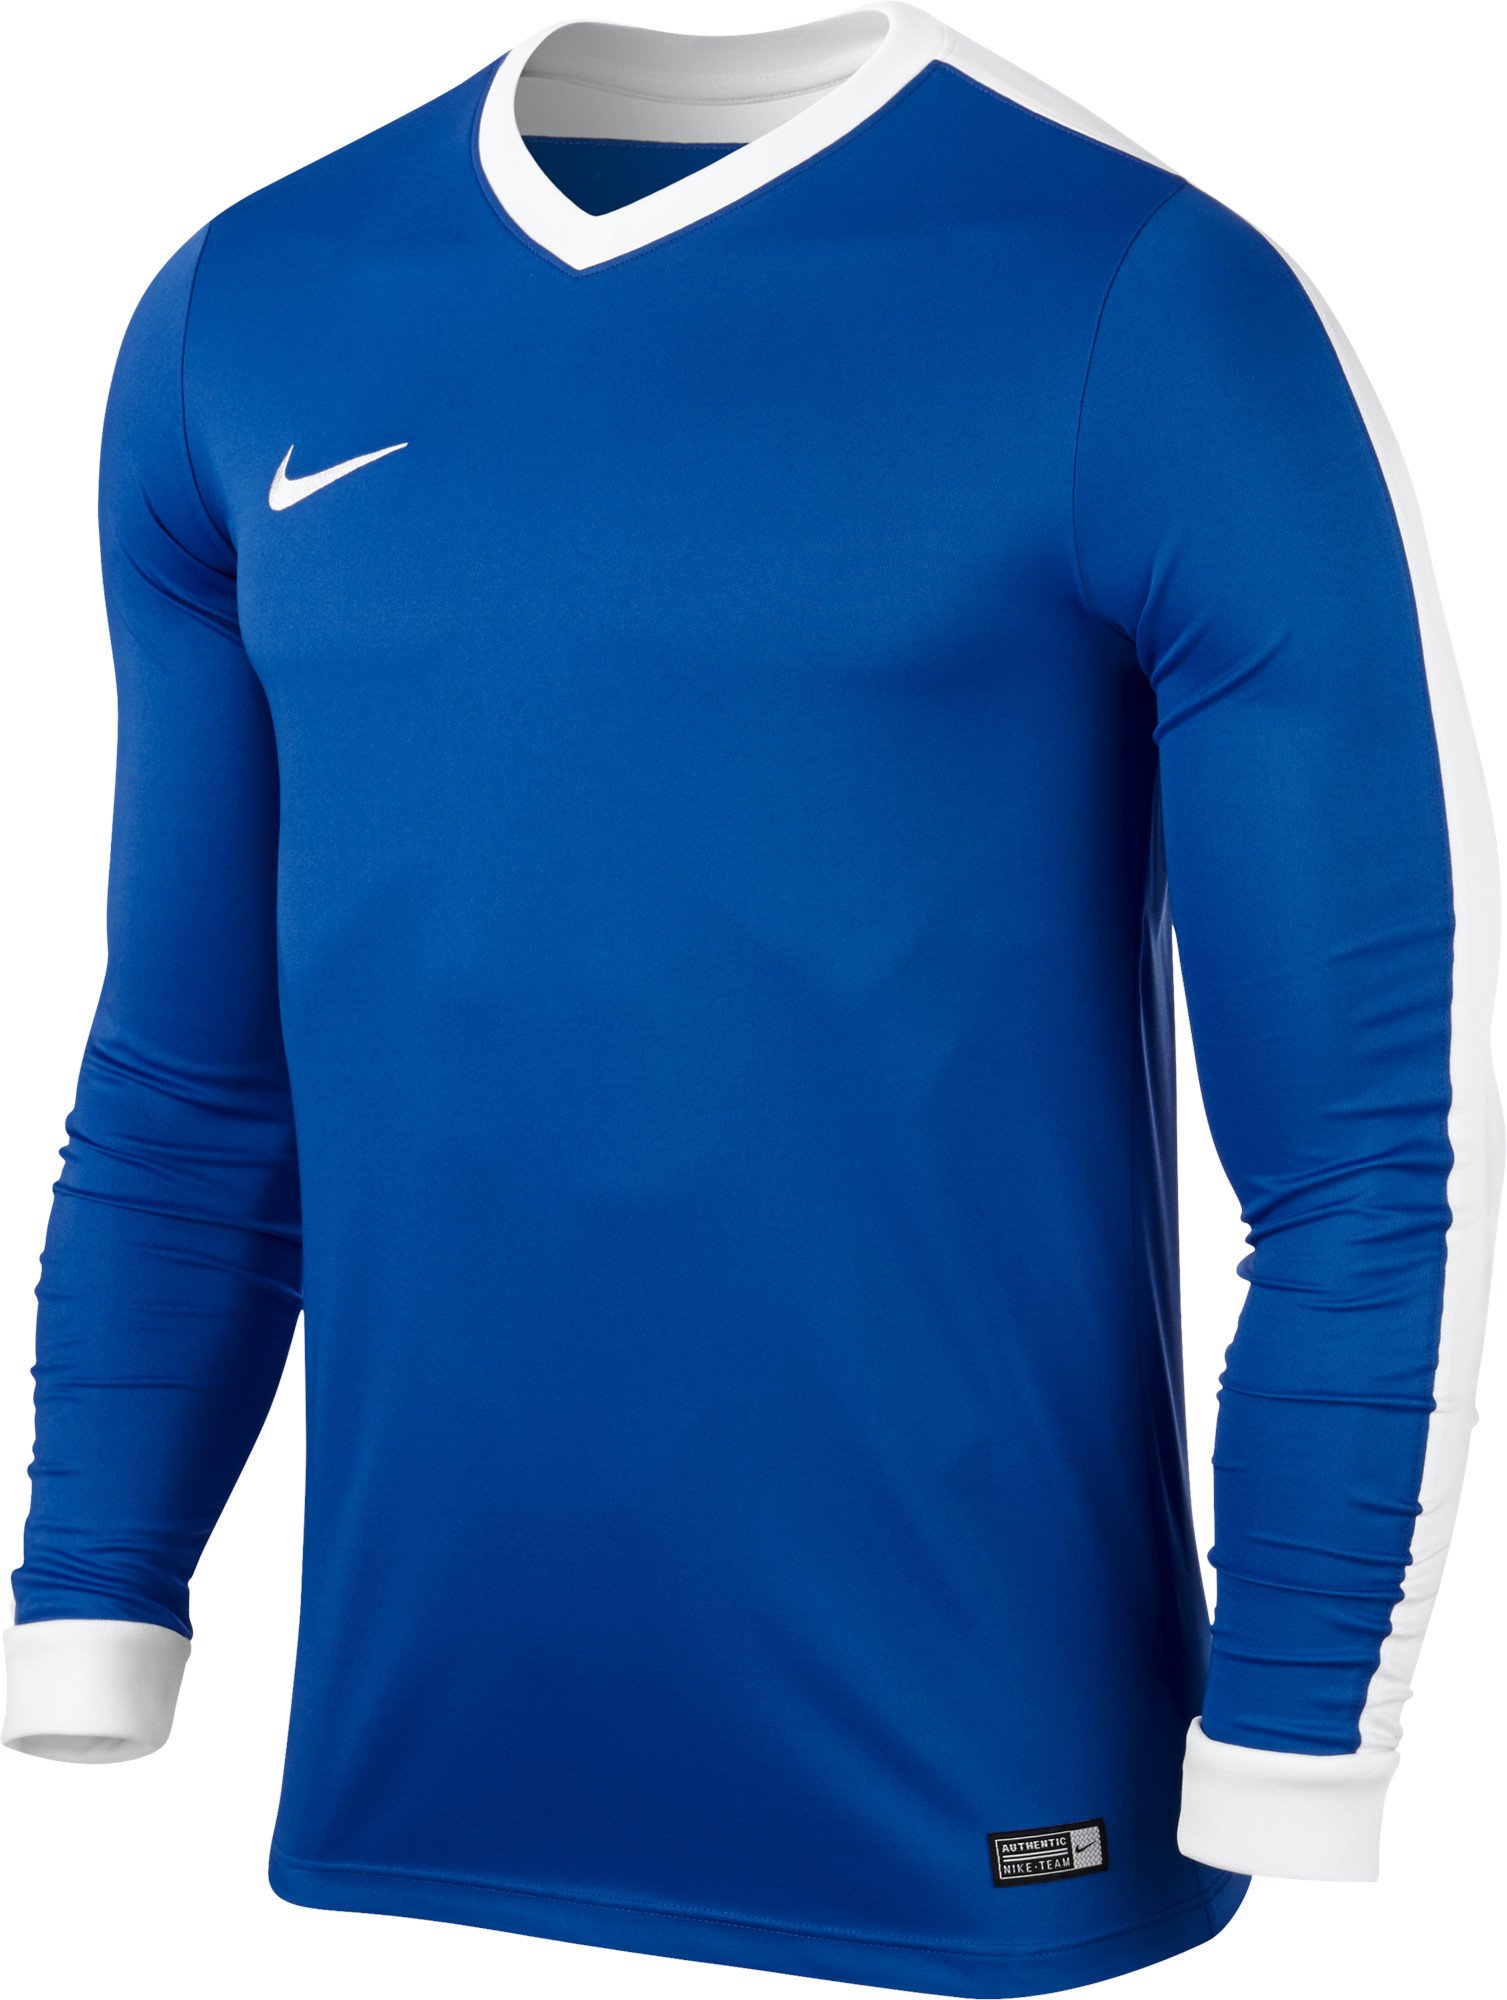 Long-sleeve shirt Nike STRIKER IV LS JR 